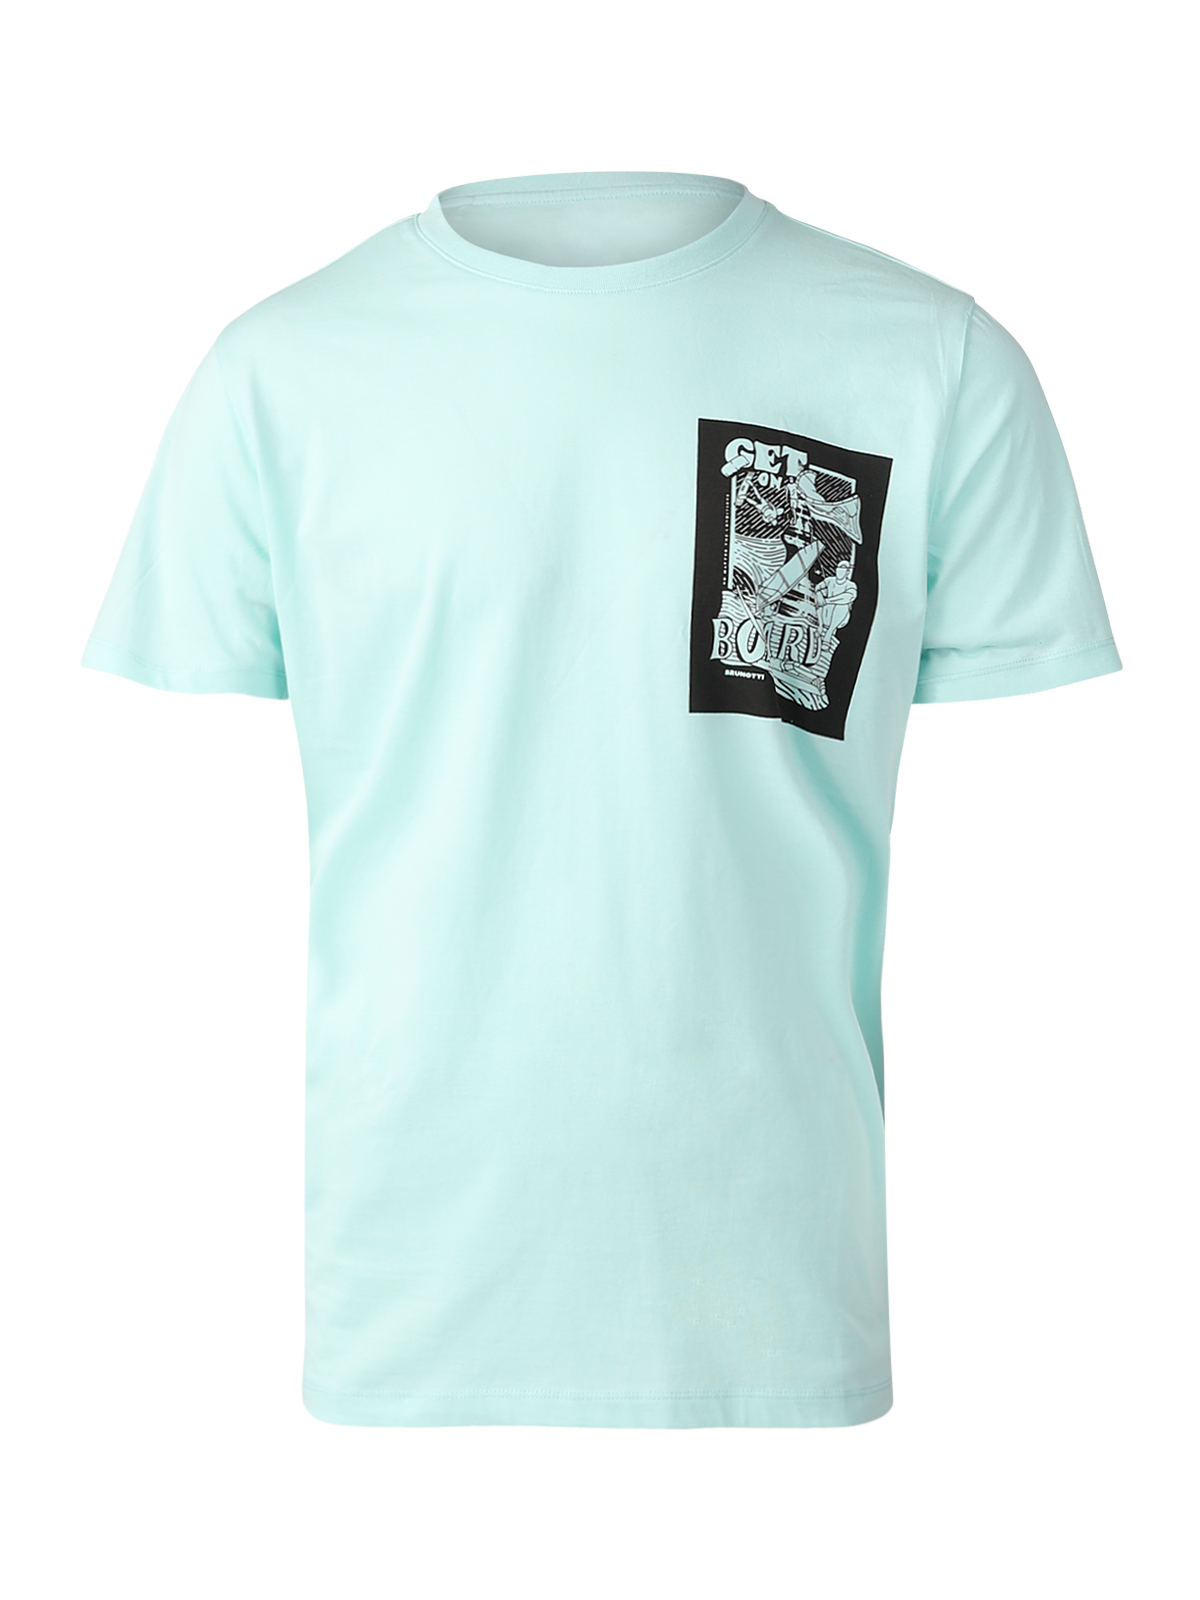 Waterworld Herren T-shirt | Mint